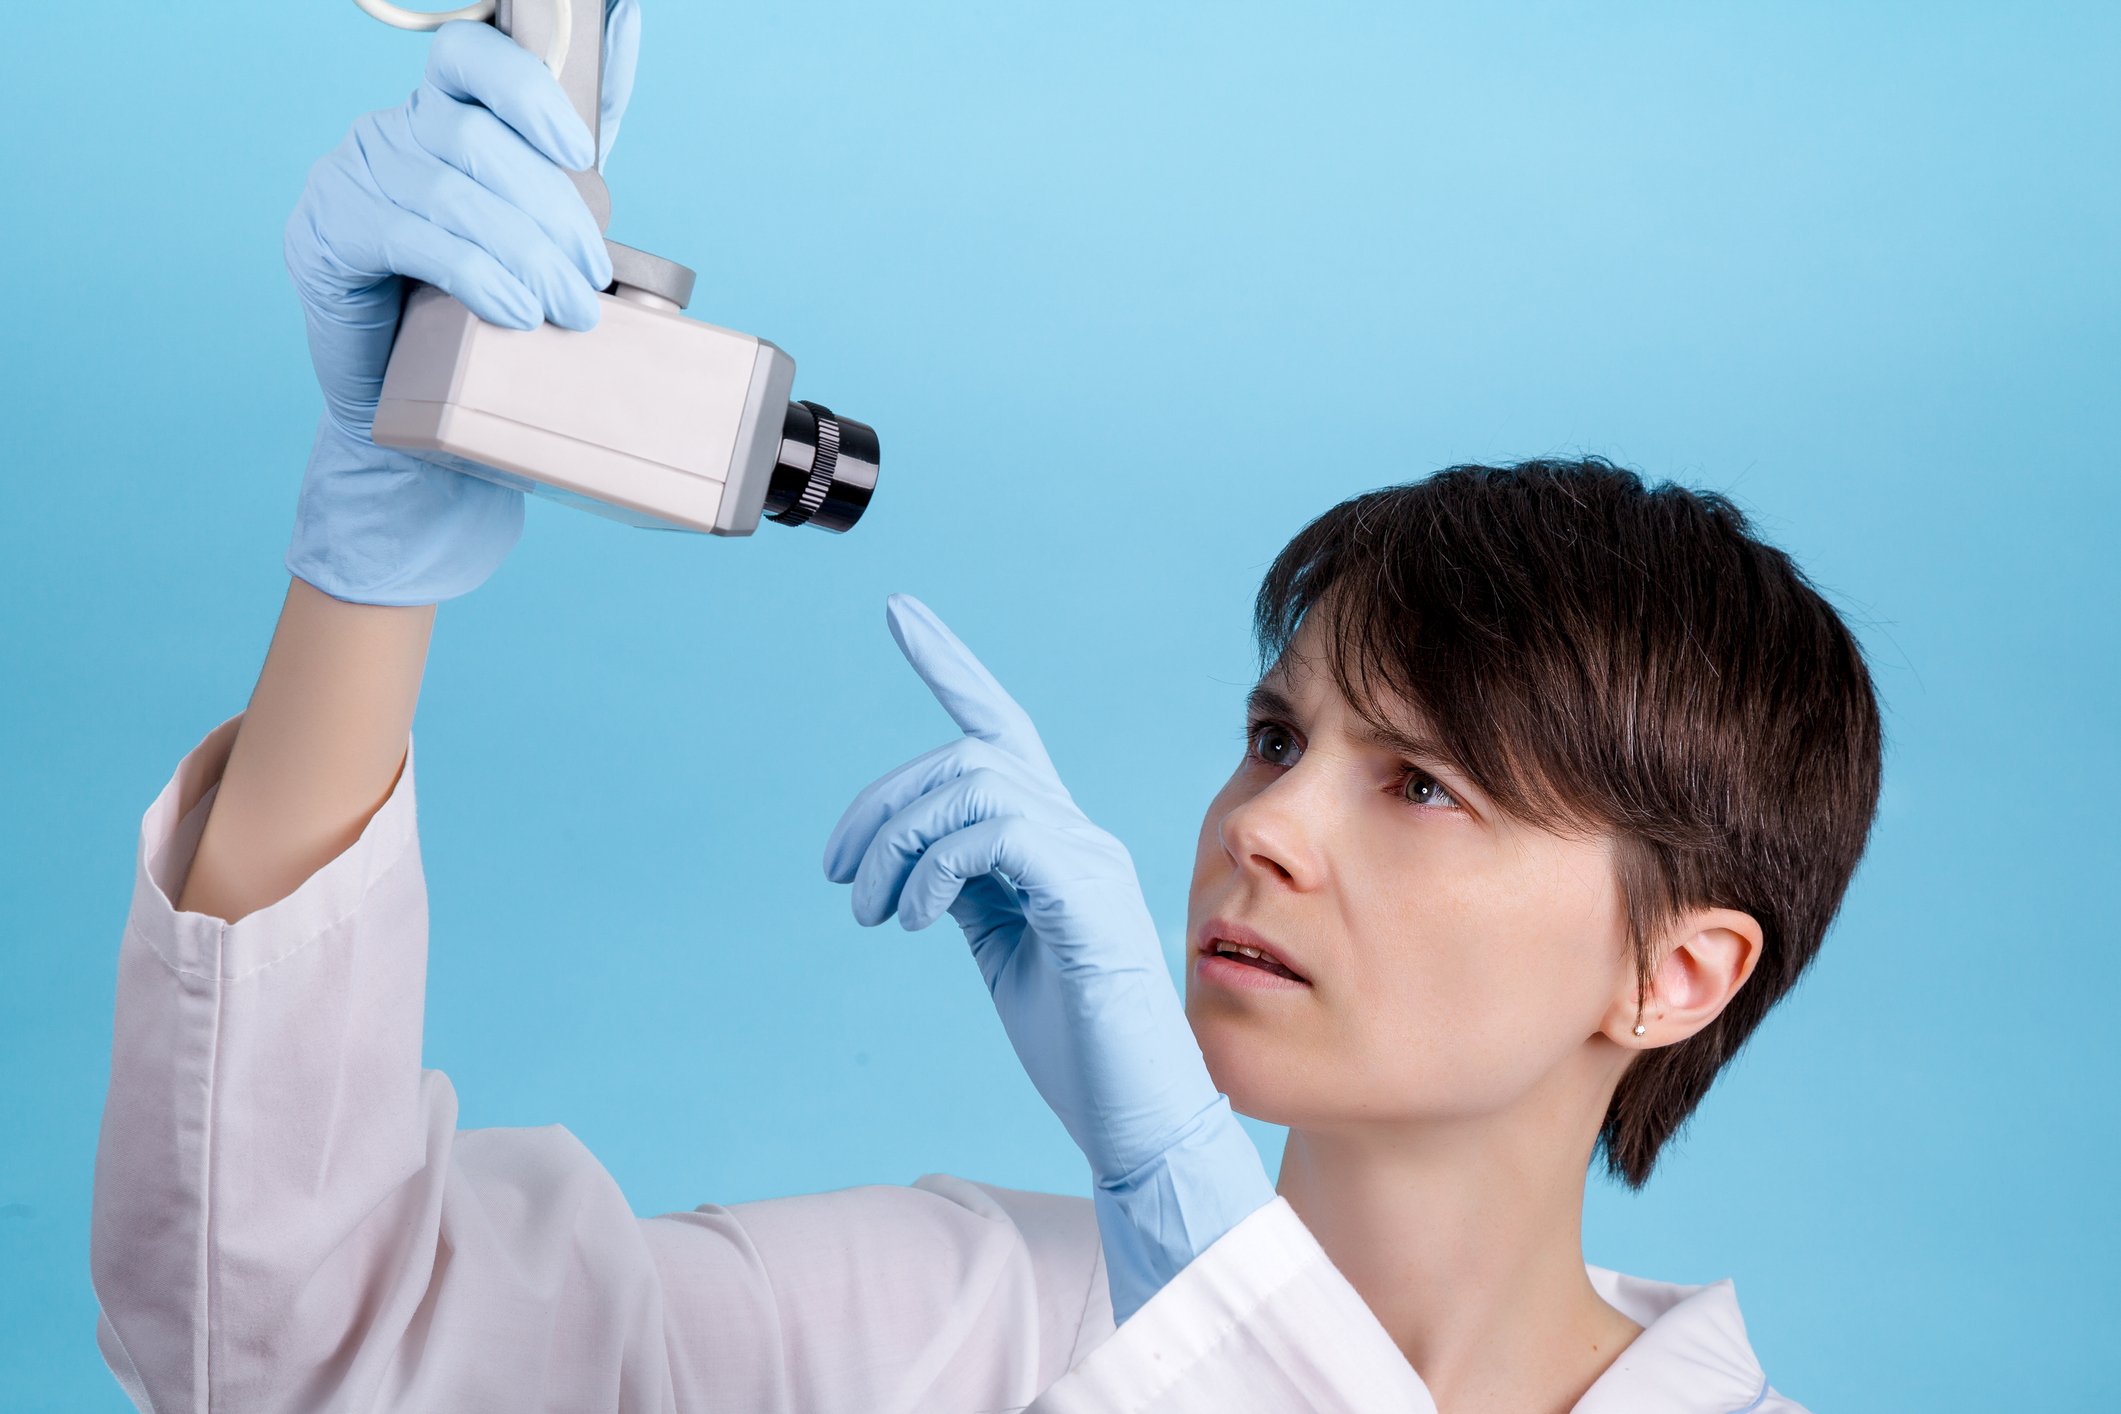 Eine Ärztin hält eine Überwachungskamera in ihrer Hand – Titelbild des jameda Blogposts zum Thema "die häufigsten Datschutzfallen in Ihrer Zahnarztpraxis!